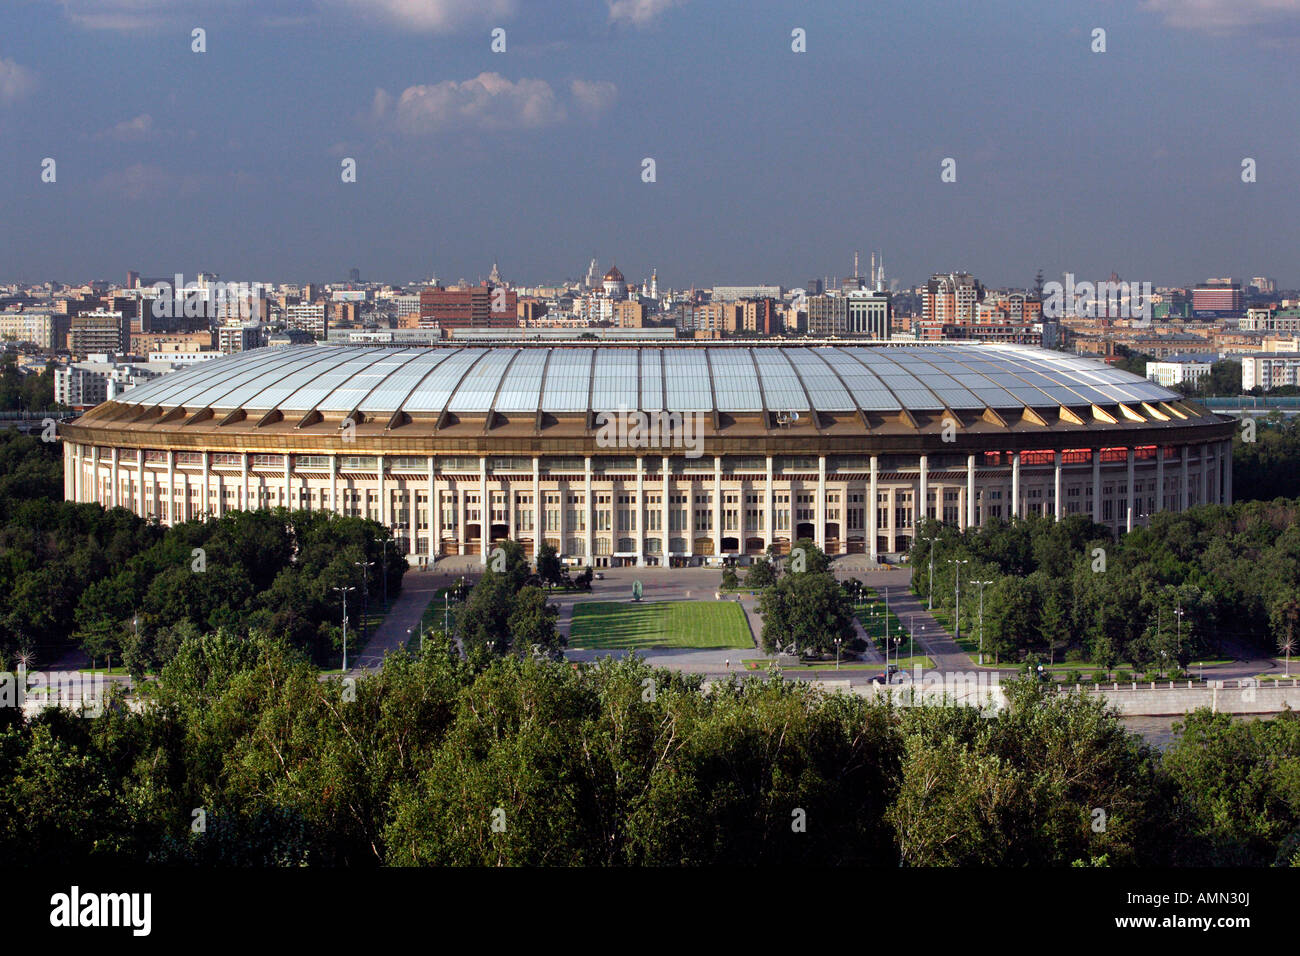 The Luzhniki Stadium, Moscow, Russia Stock Photo